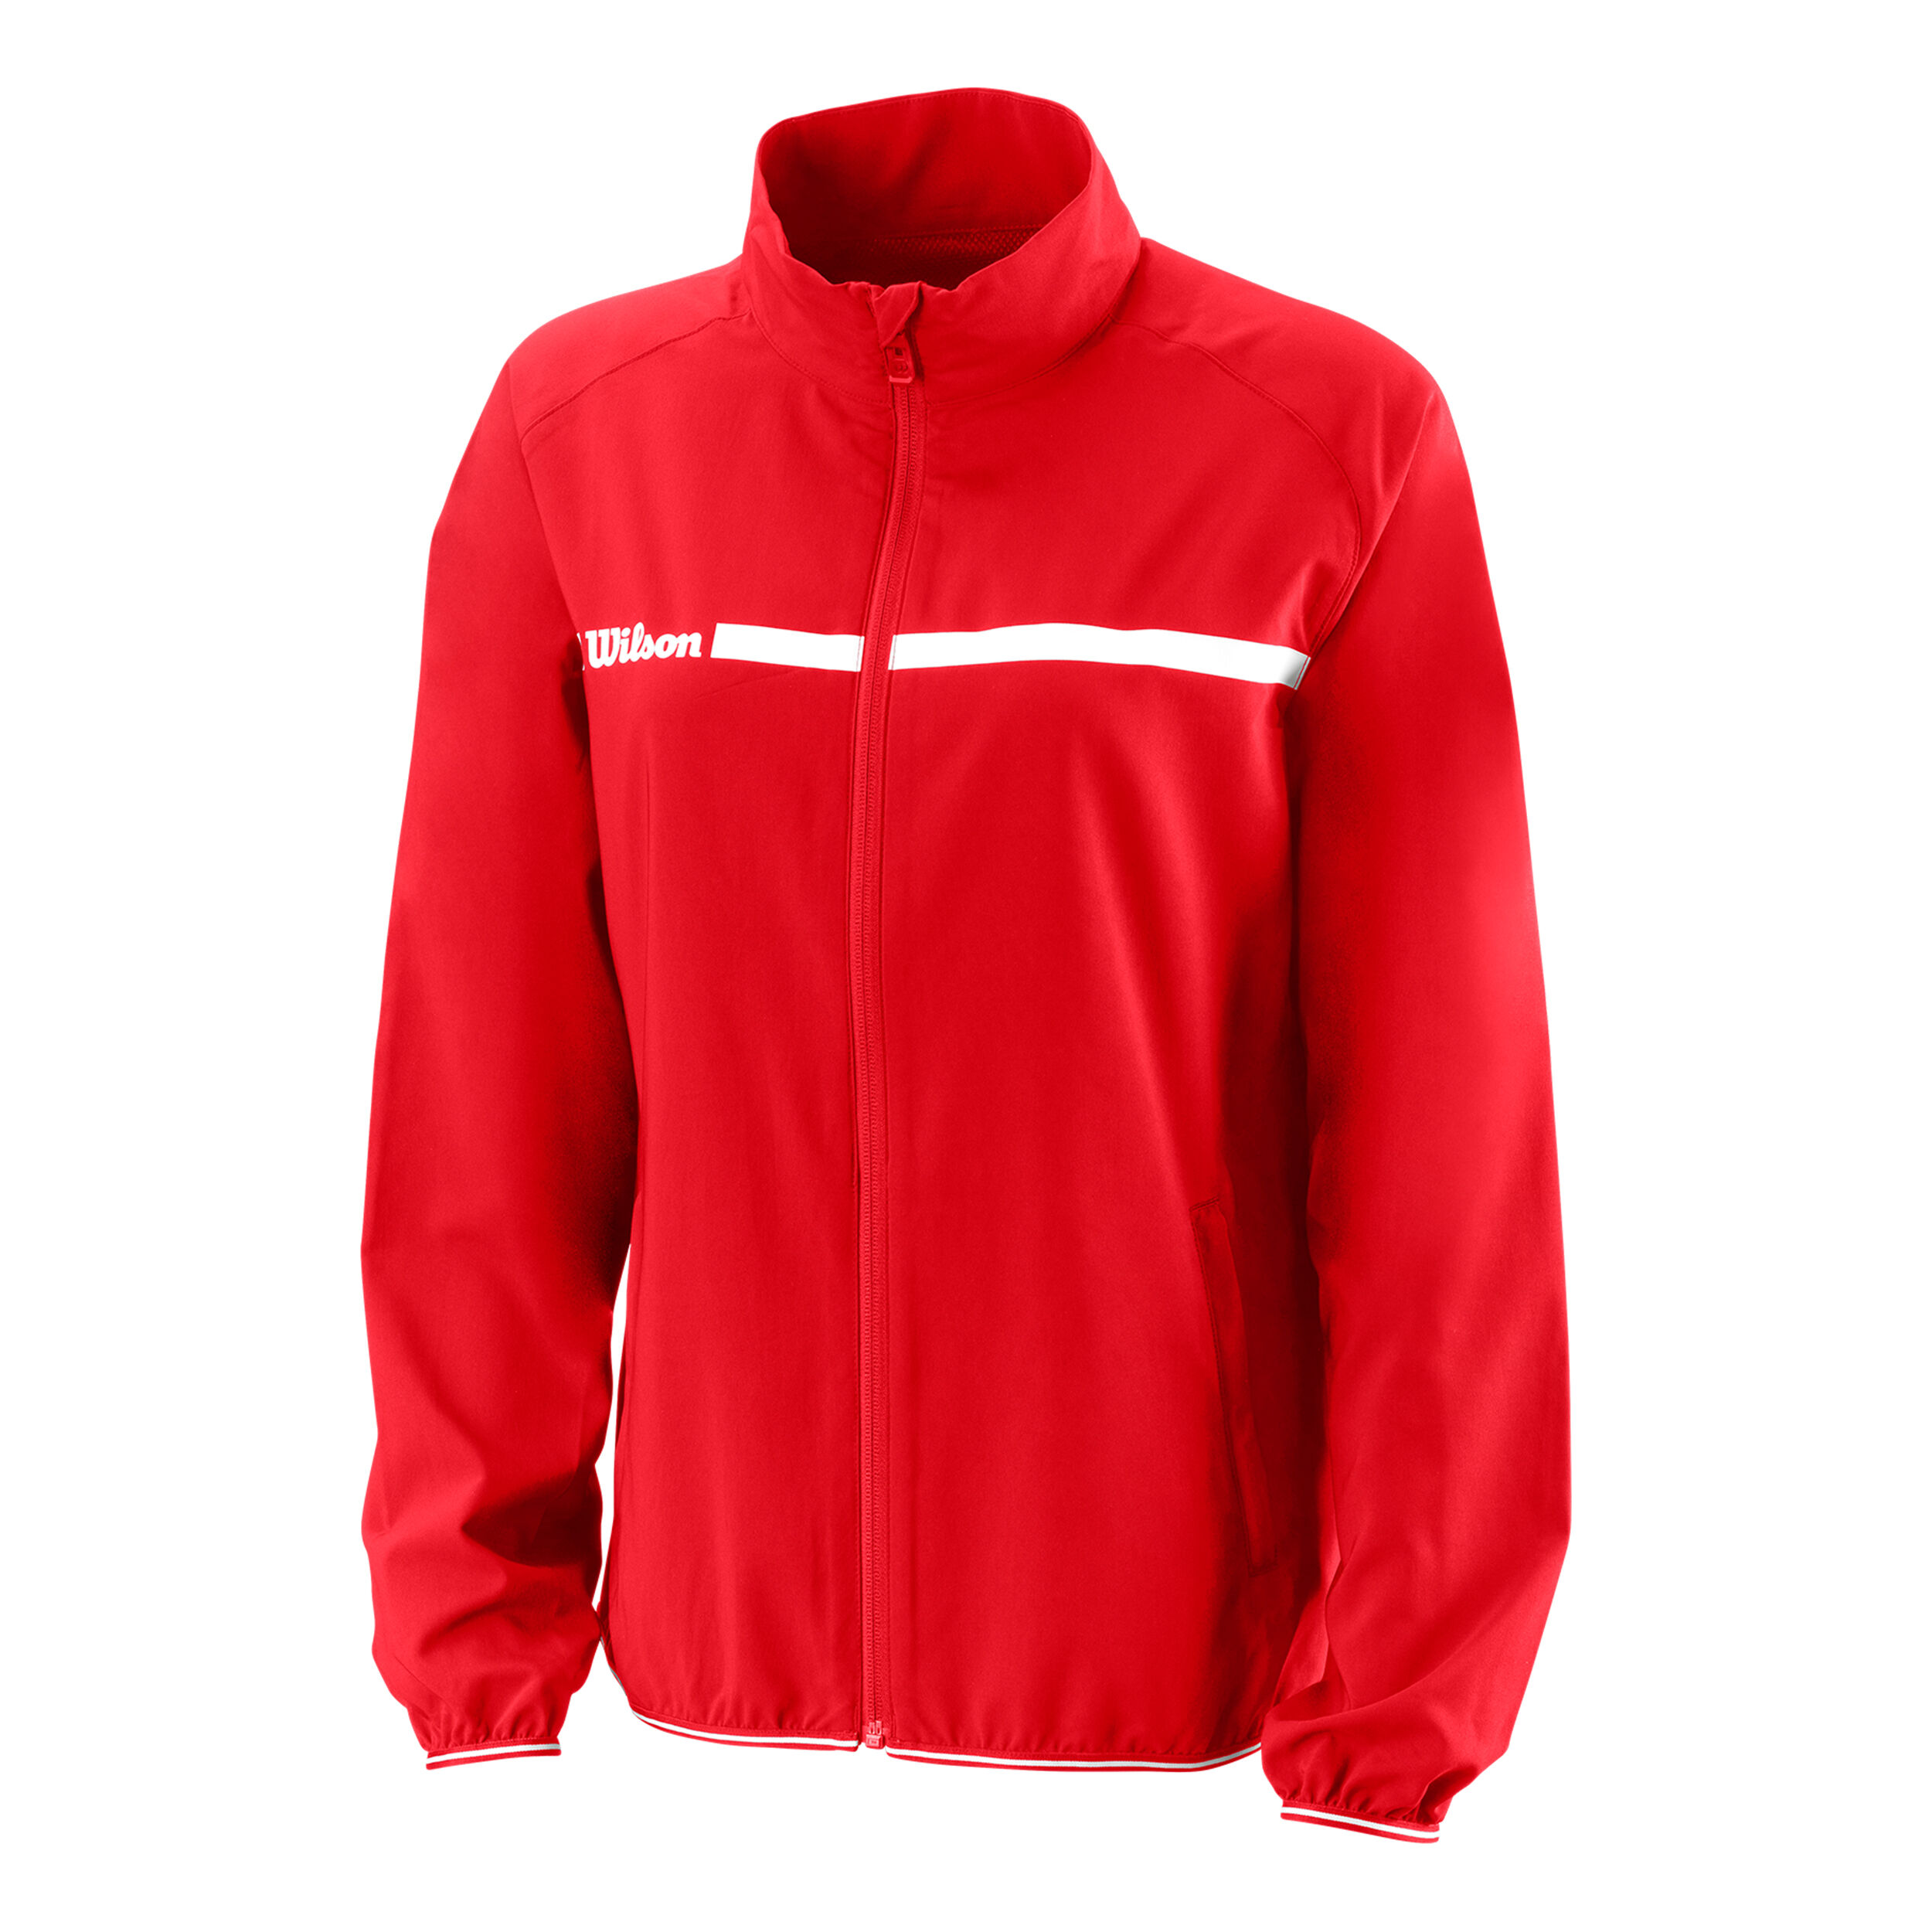 W Team Woven Jacket Wilson Damen Trainingsjacke Größe: S WRA766404 Rot/Weiß Polyester 